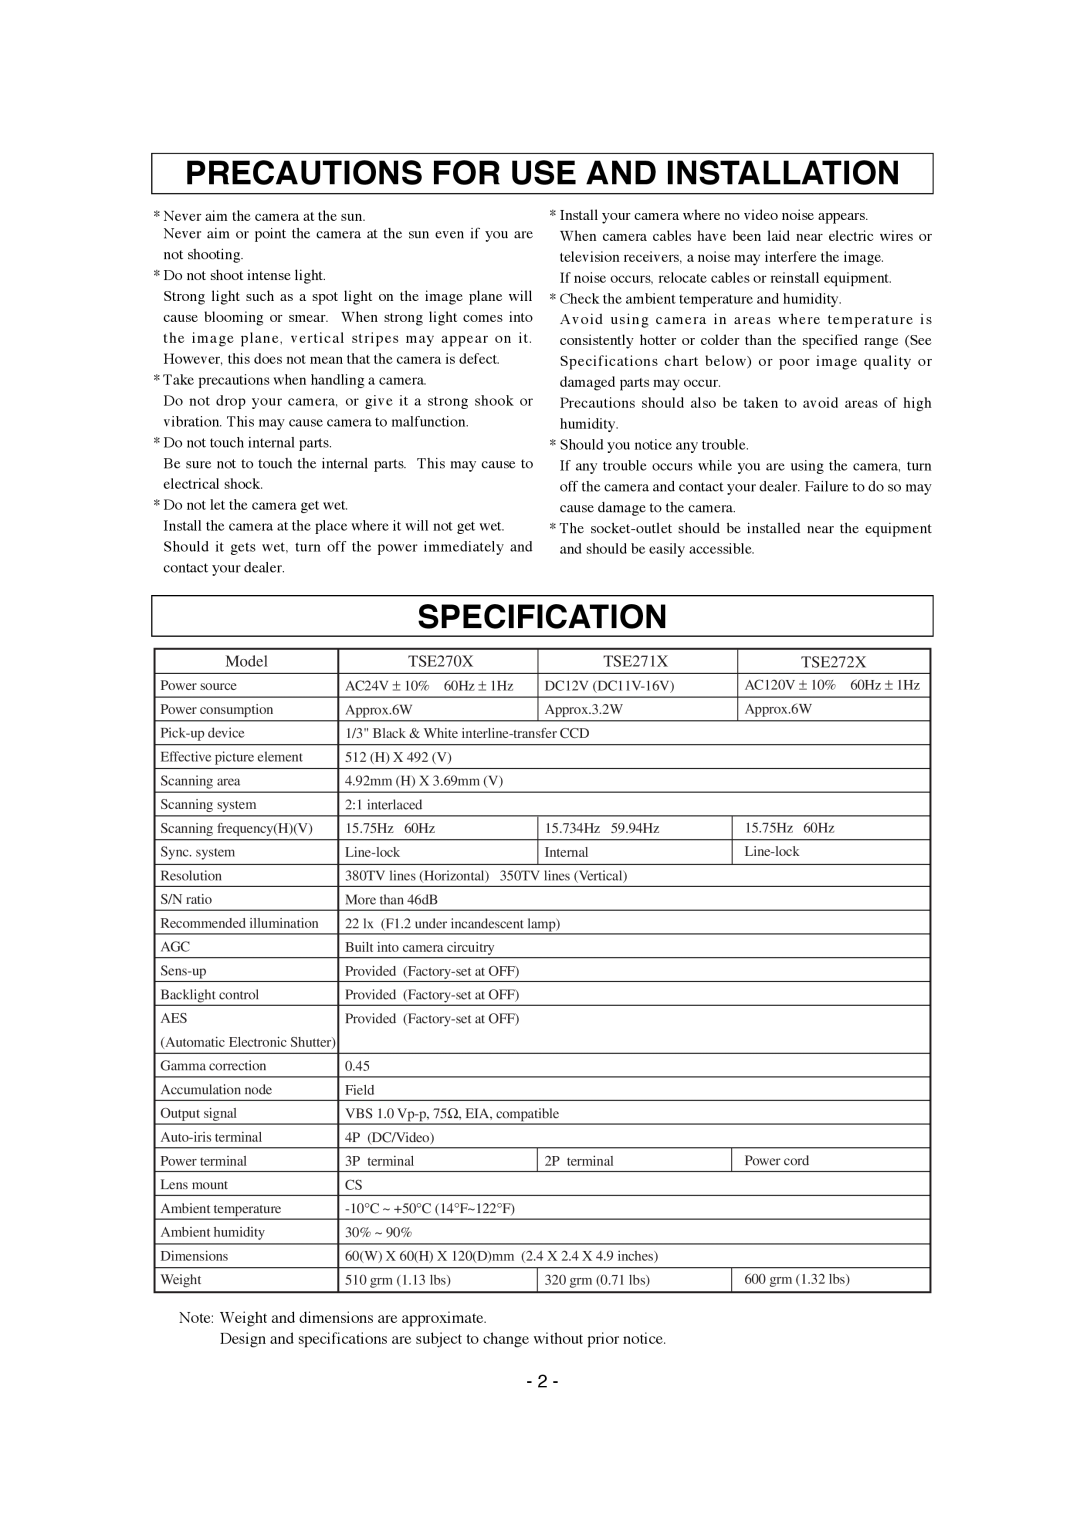 Elmo TSE272X instruction manual Precautions For Use And Installation, Specification, Model, TSE270X, TSE271X 